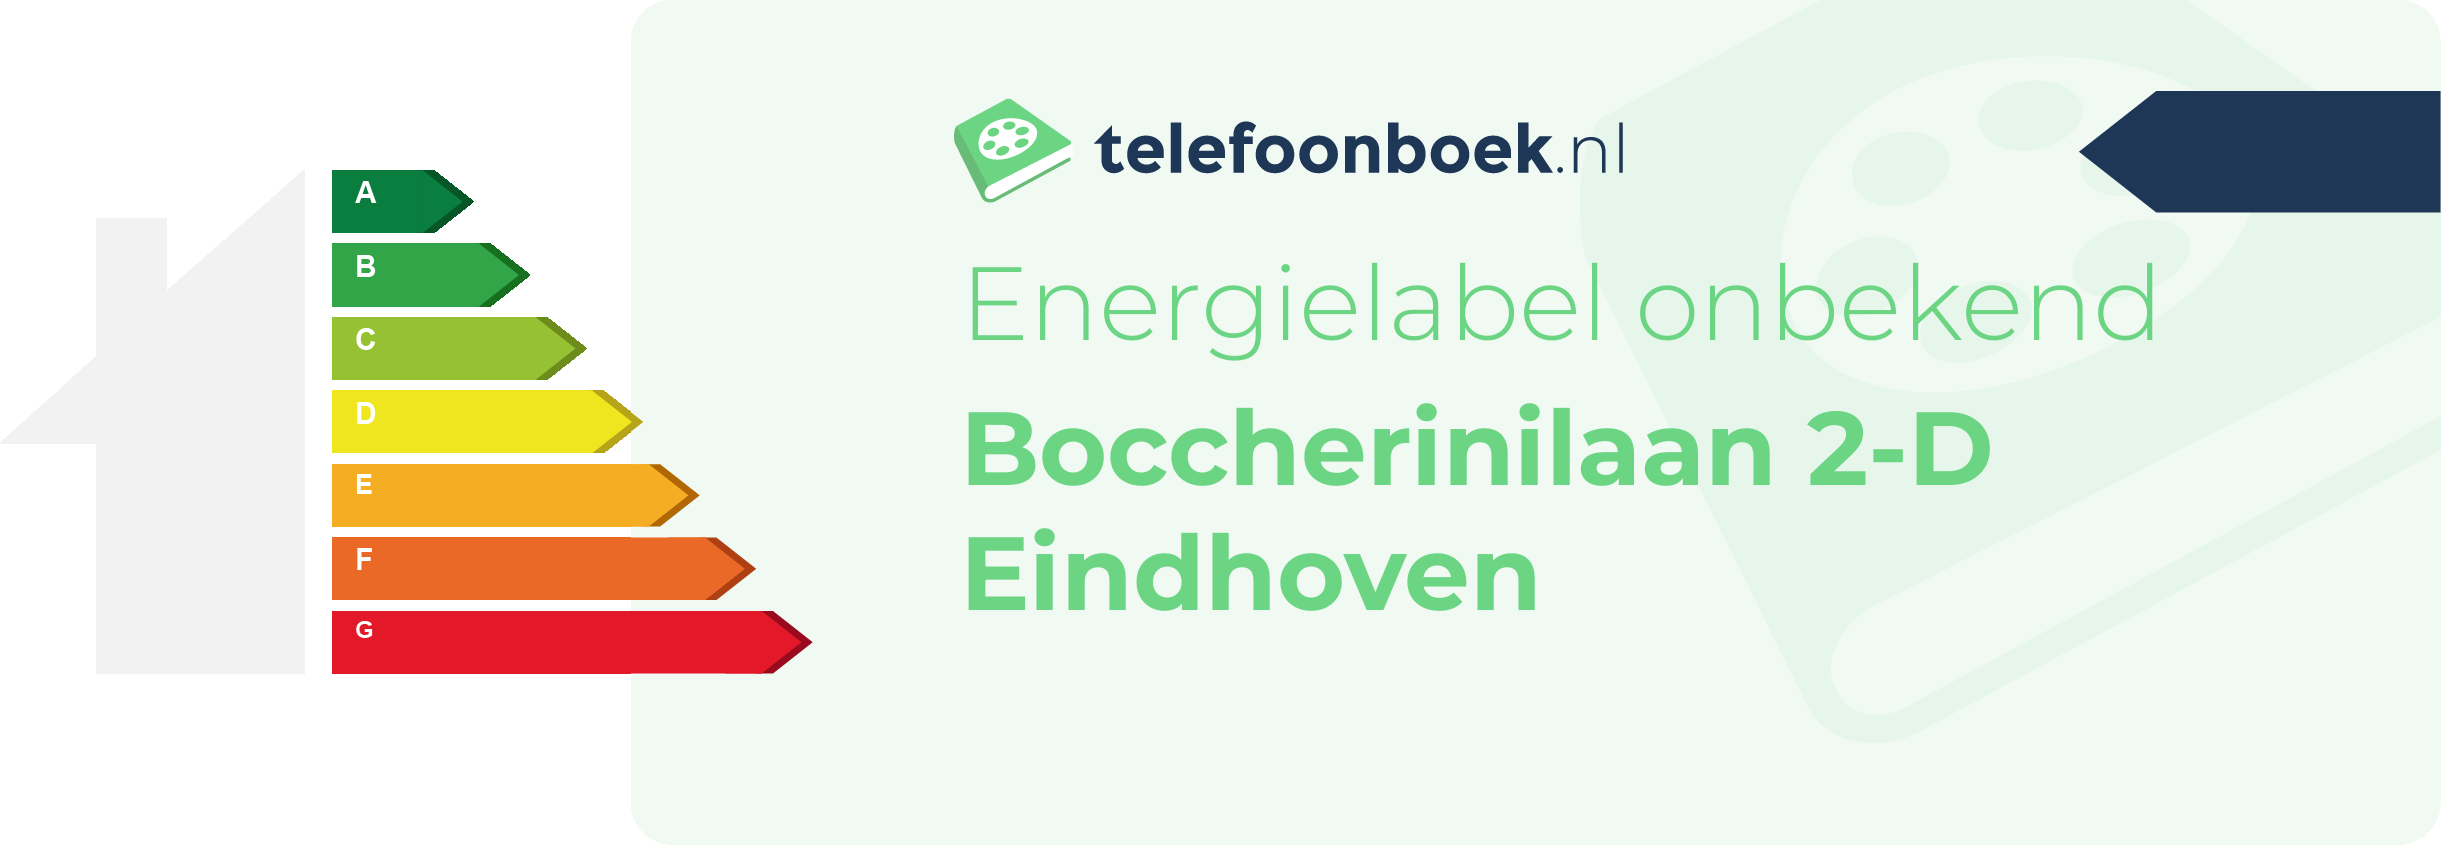 Energielabel Boccherinilaan 2-D Eindhoven